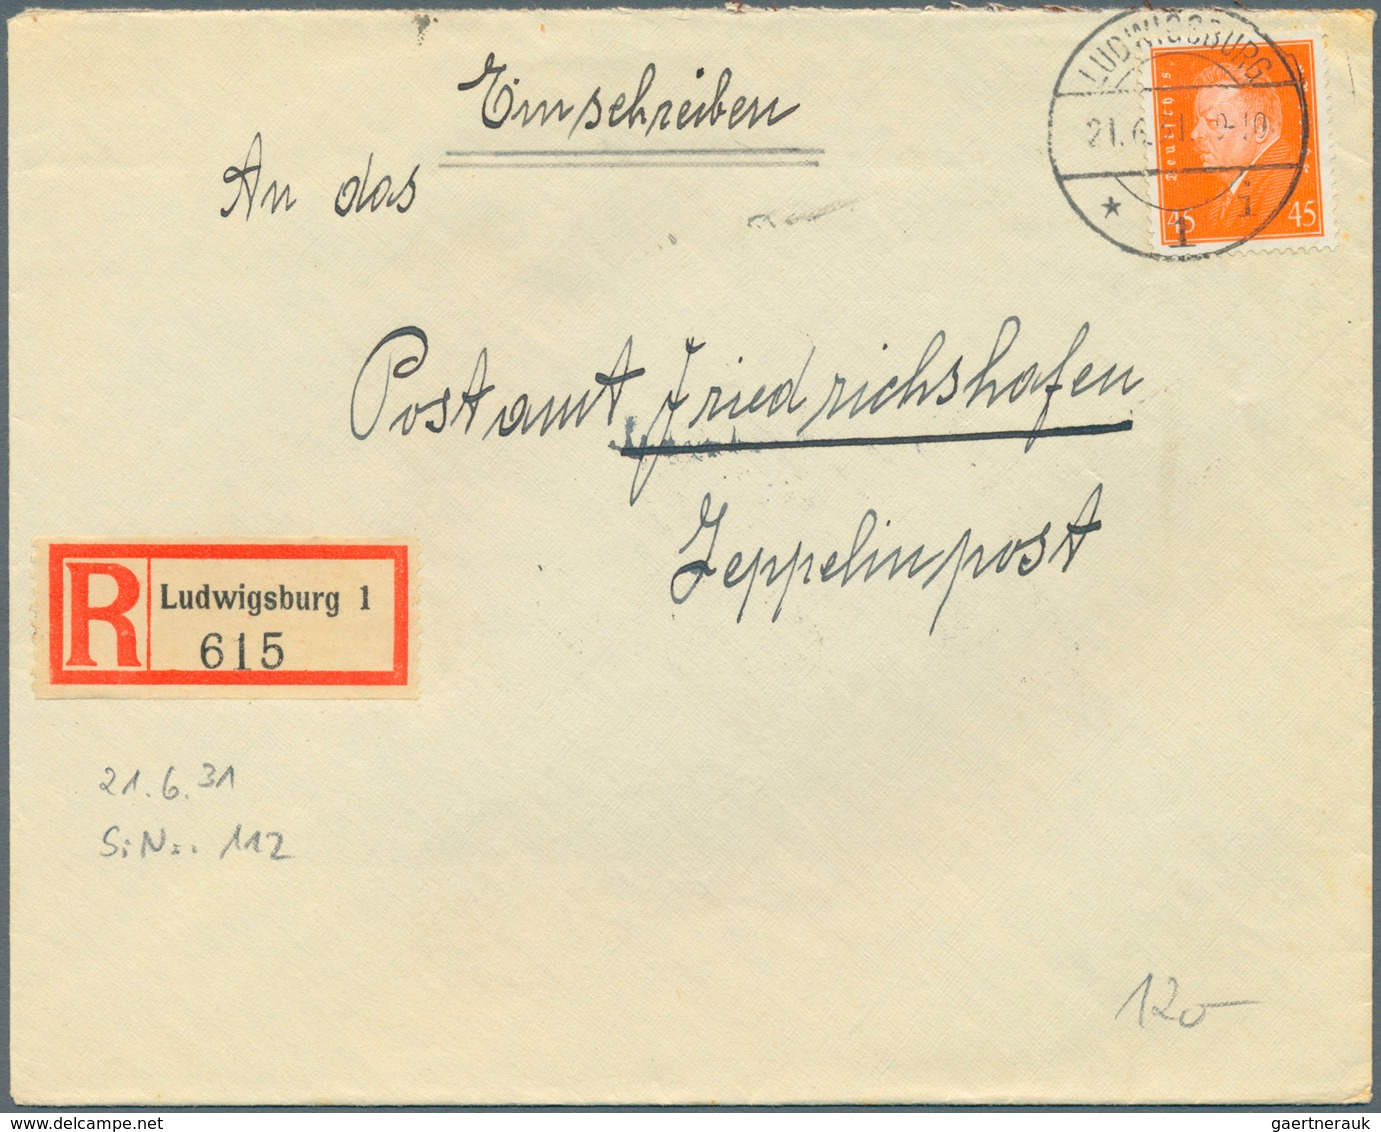 Zeppelinpost Deutschland: 1929/33, 125 Briefe adressiert nach Friedrichshafen an das dortige Postamt